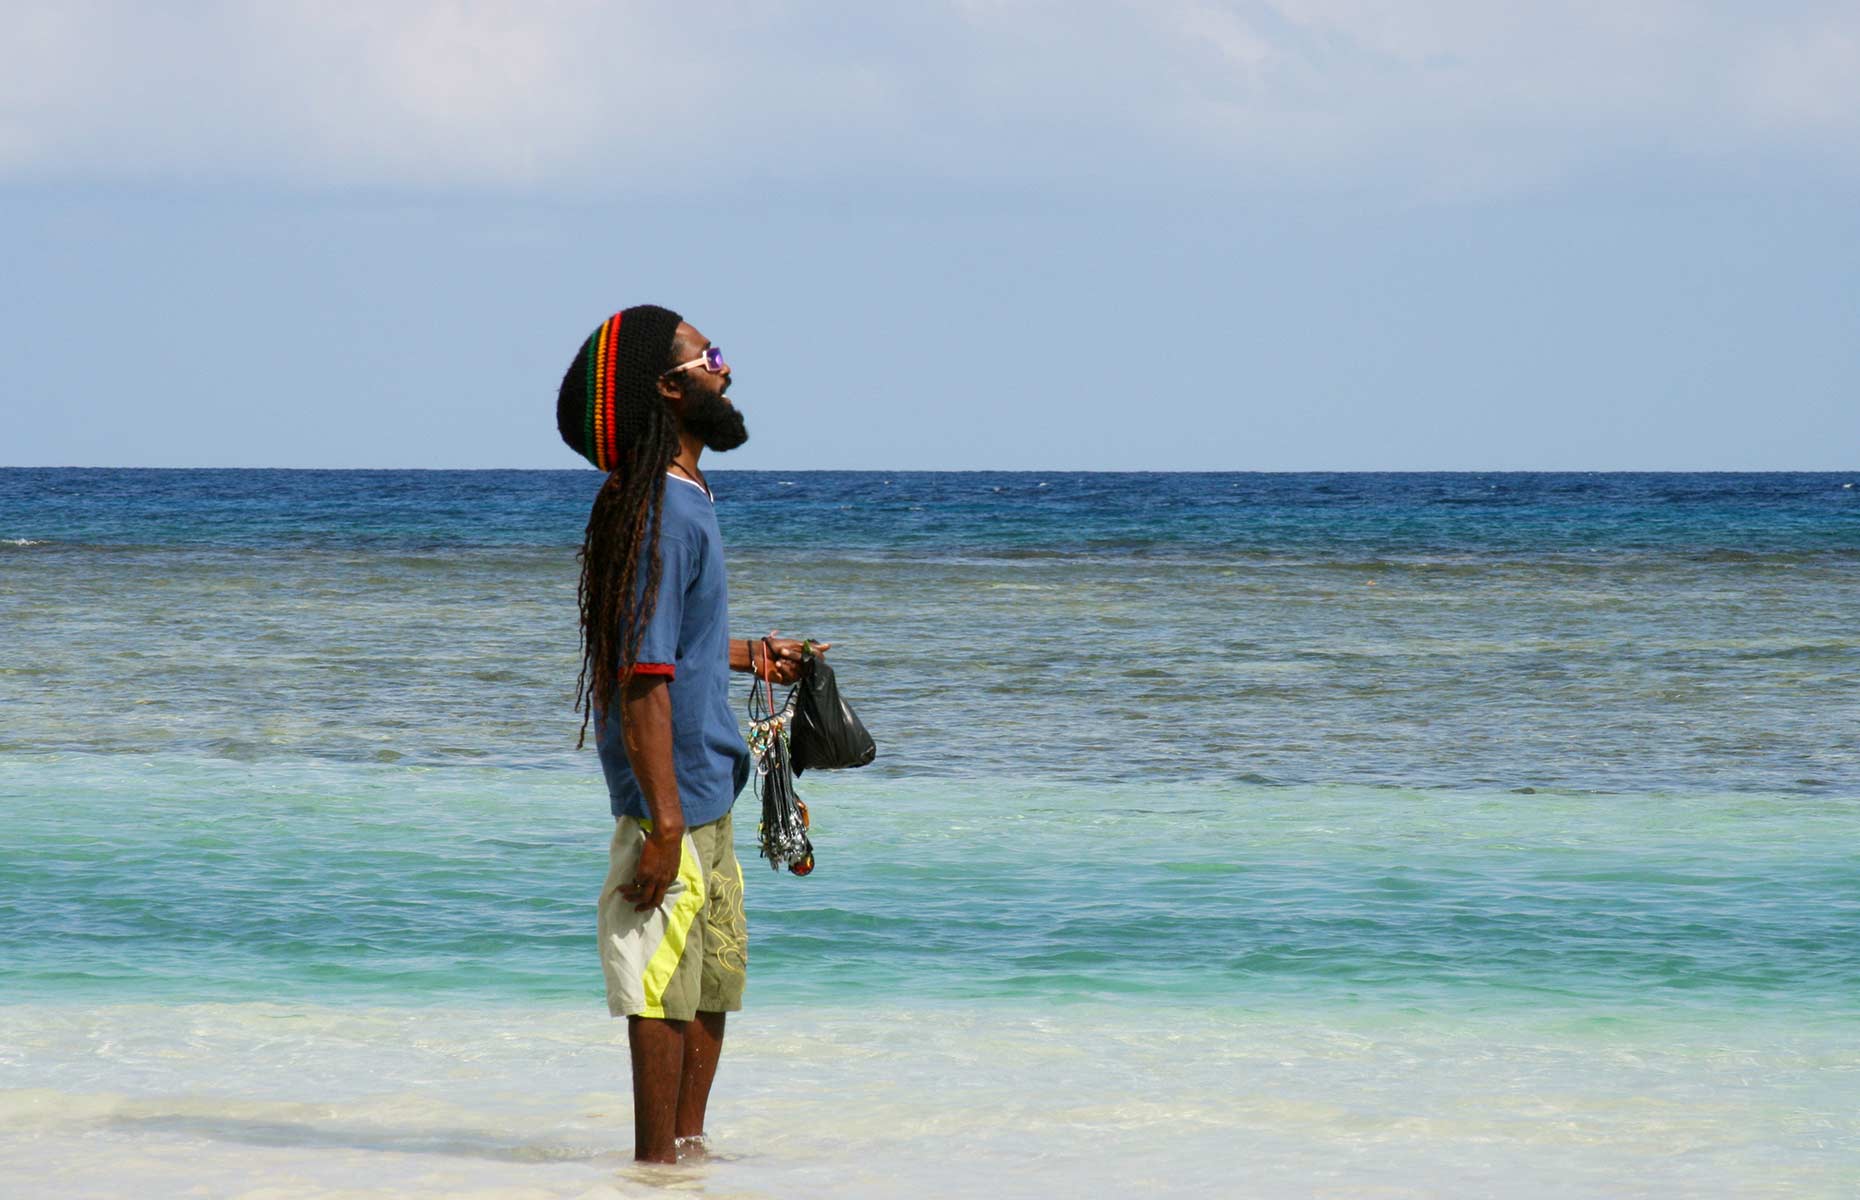 Jamaïcain - Séjour Caraïbes, Voyage Jamaïque ©yuan-zhang